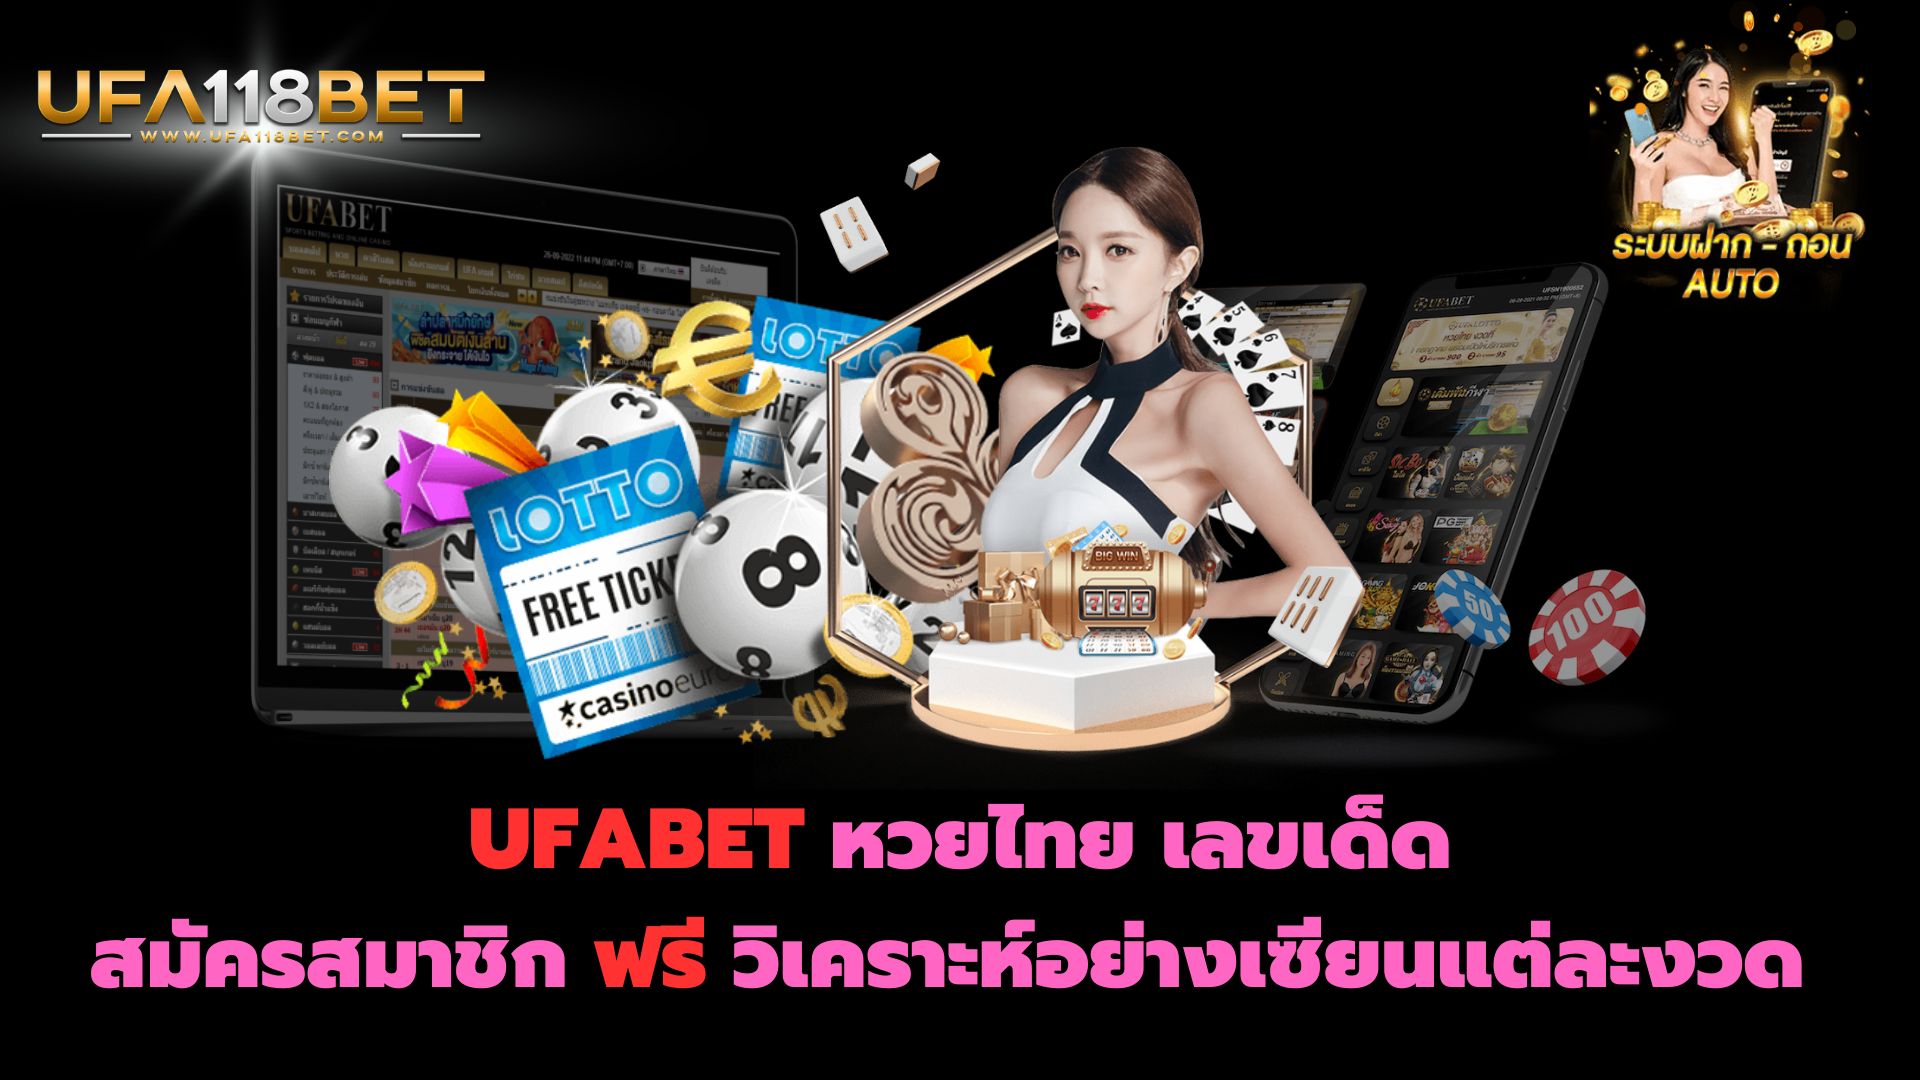 UFABET หวยไทย เลขเด็ด สมัครสมาชิก ฟรี วิเคราะห์อย่างเซียนแต่ละงวด